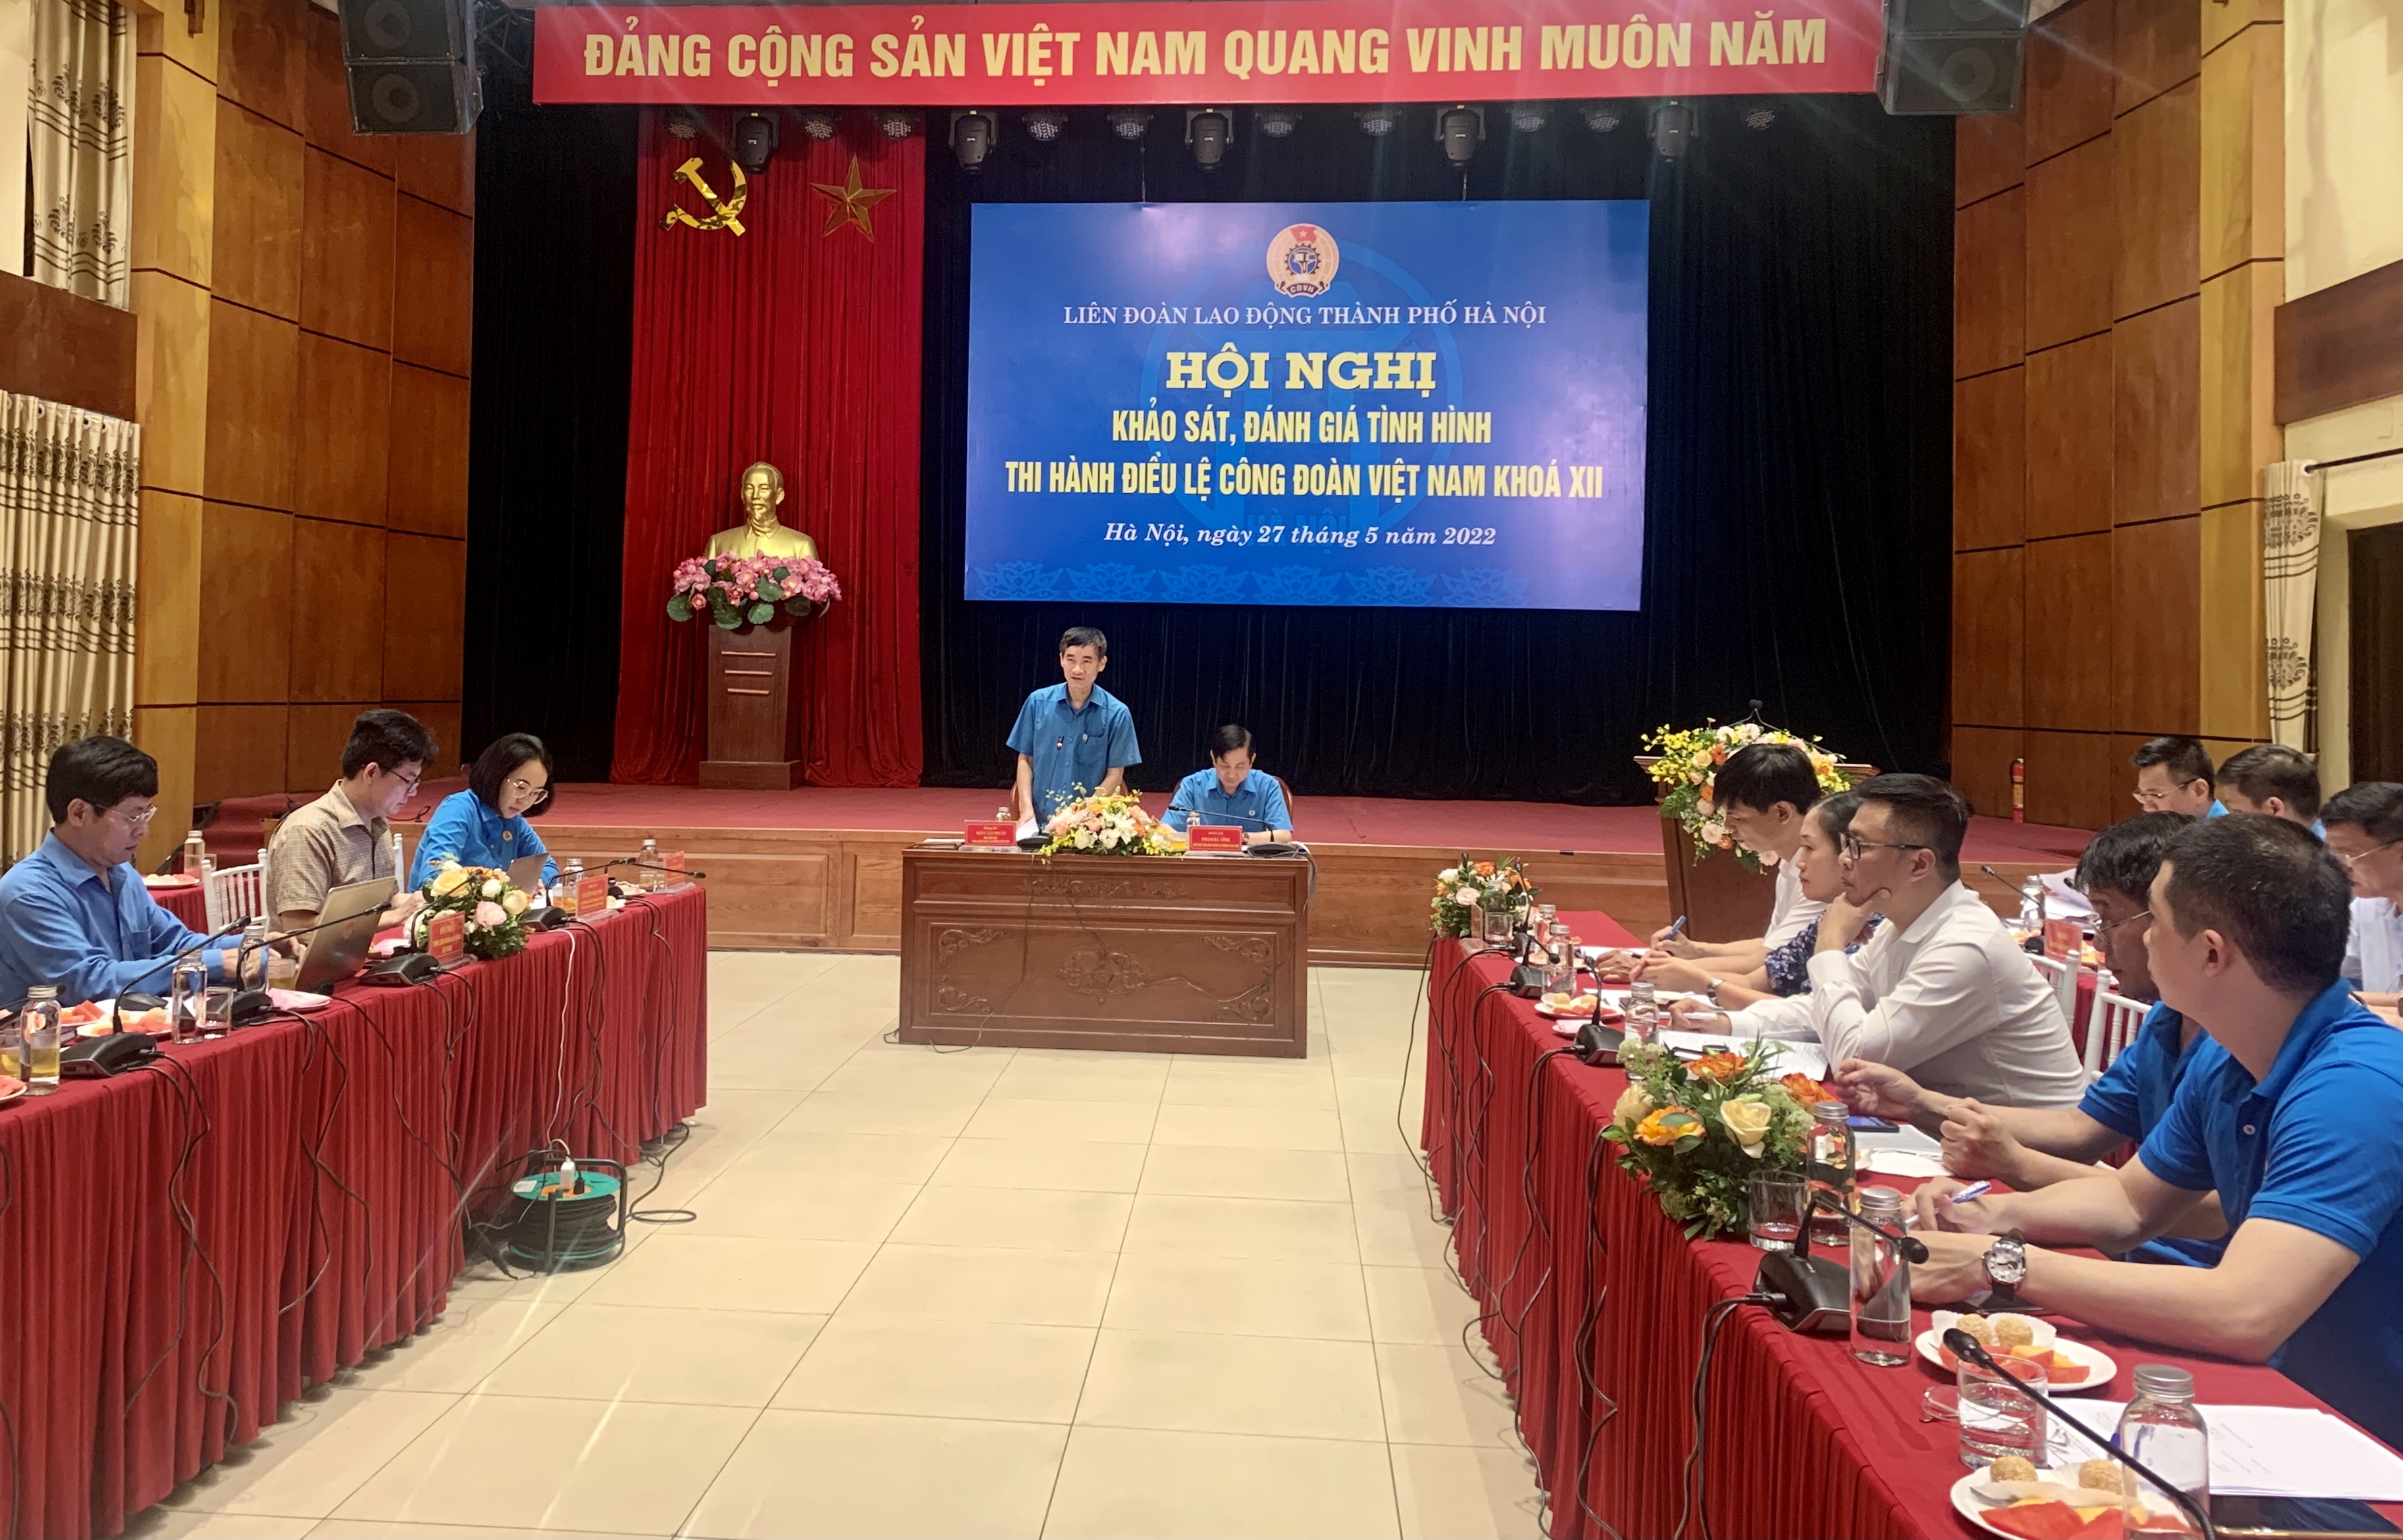 Điều lệ Công đoàn Việt Nam là kim chỉ nam, định hướng các hoạt động của tổ chức Công đoàn Thủ đô